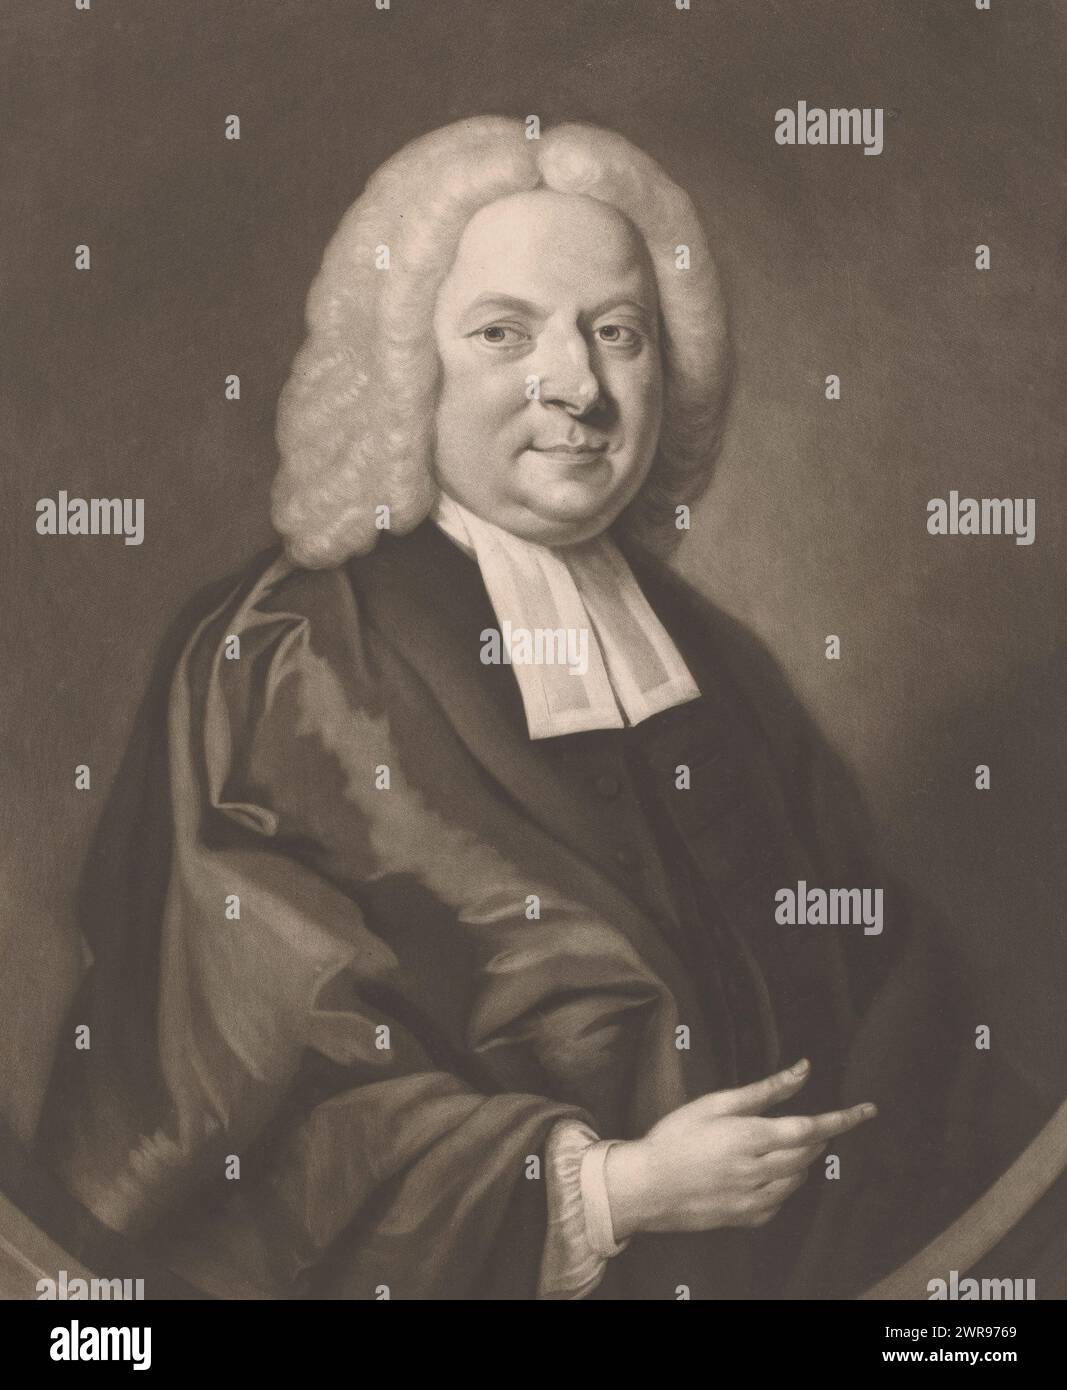 Porträt von David Jennings, Druckmacher: James McArdell, nach Malerei von Jones, London, ca. 1745 - 1765, Papier, Höhe 344 mm x Breite 251 mm, Druck Stockfoto